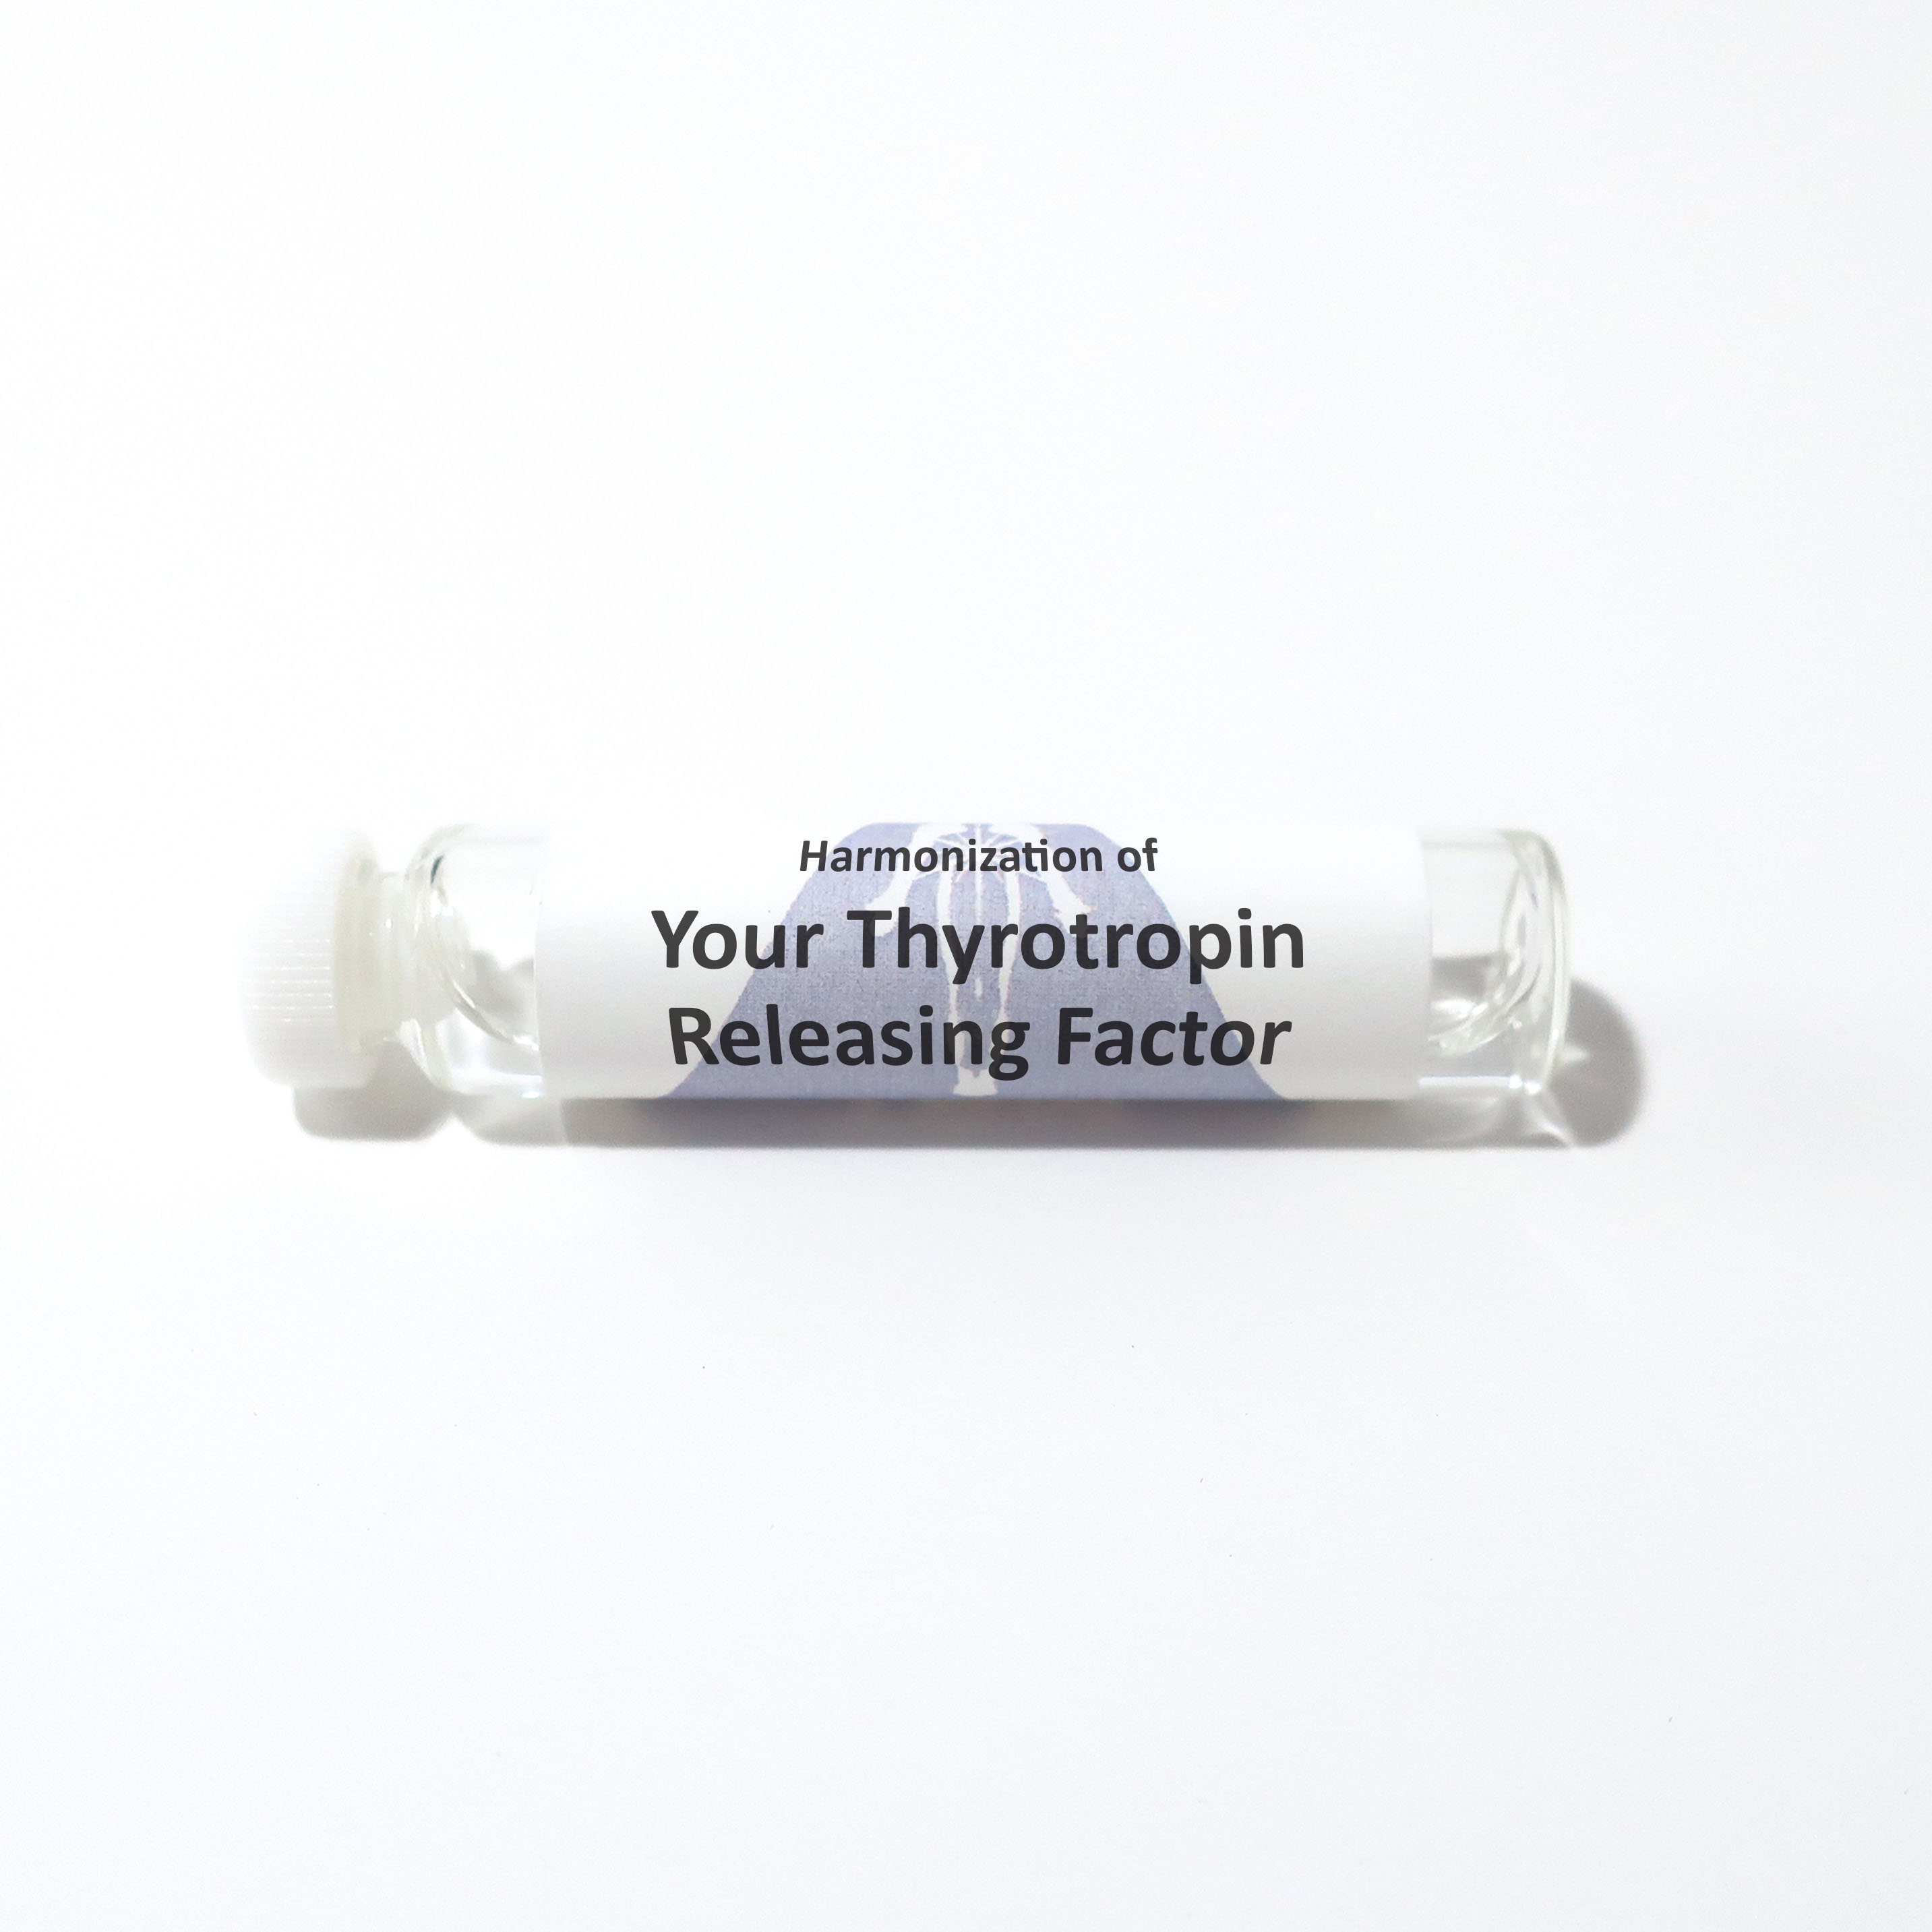 Your Thyrotropin Releasing Factor